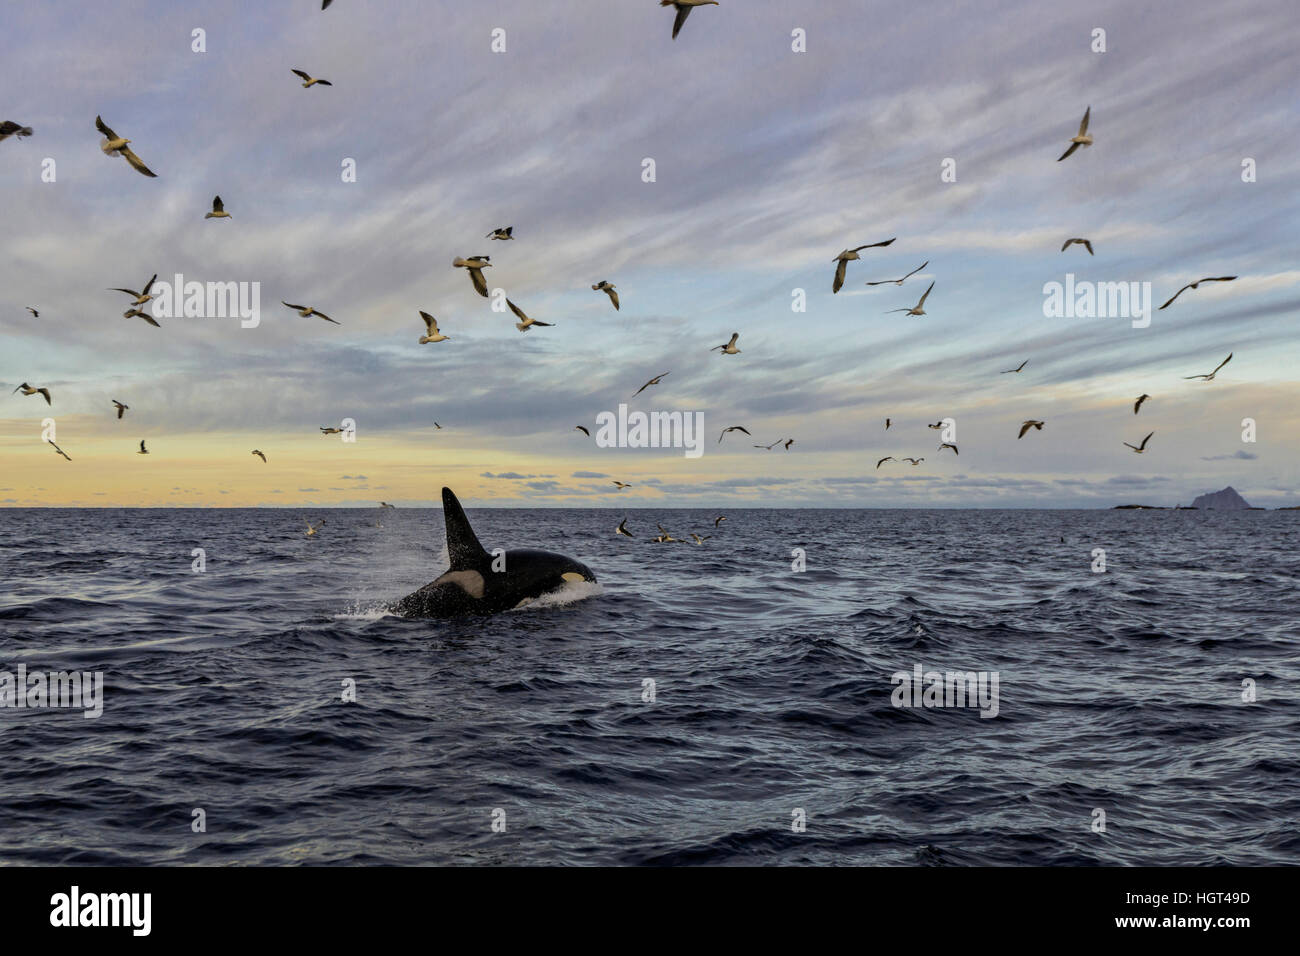 Gaviotas (Laridae) volando por encima de orca (Orcinus orca), Kaldfjorden, Noruega Foto de stock